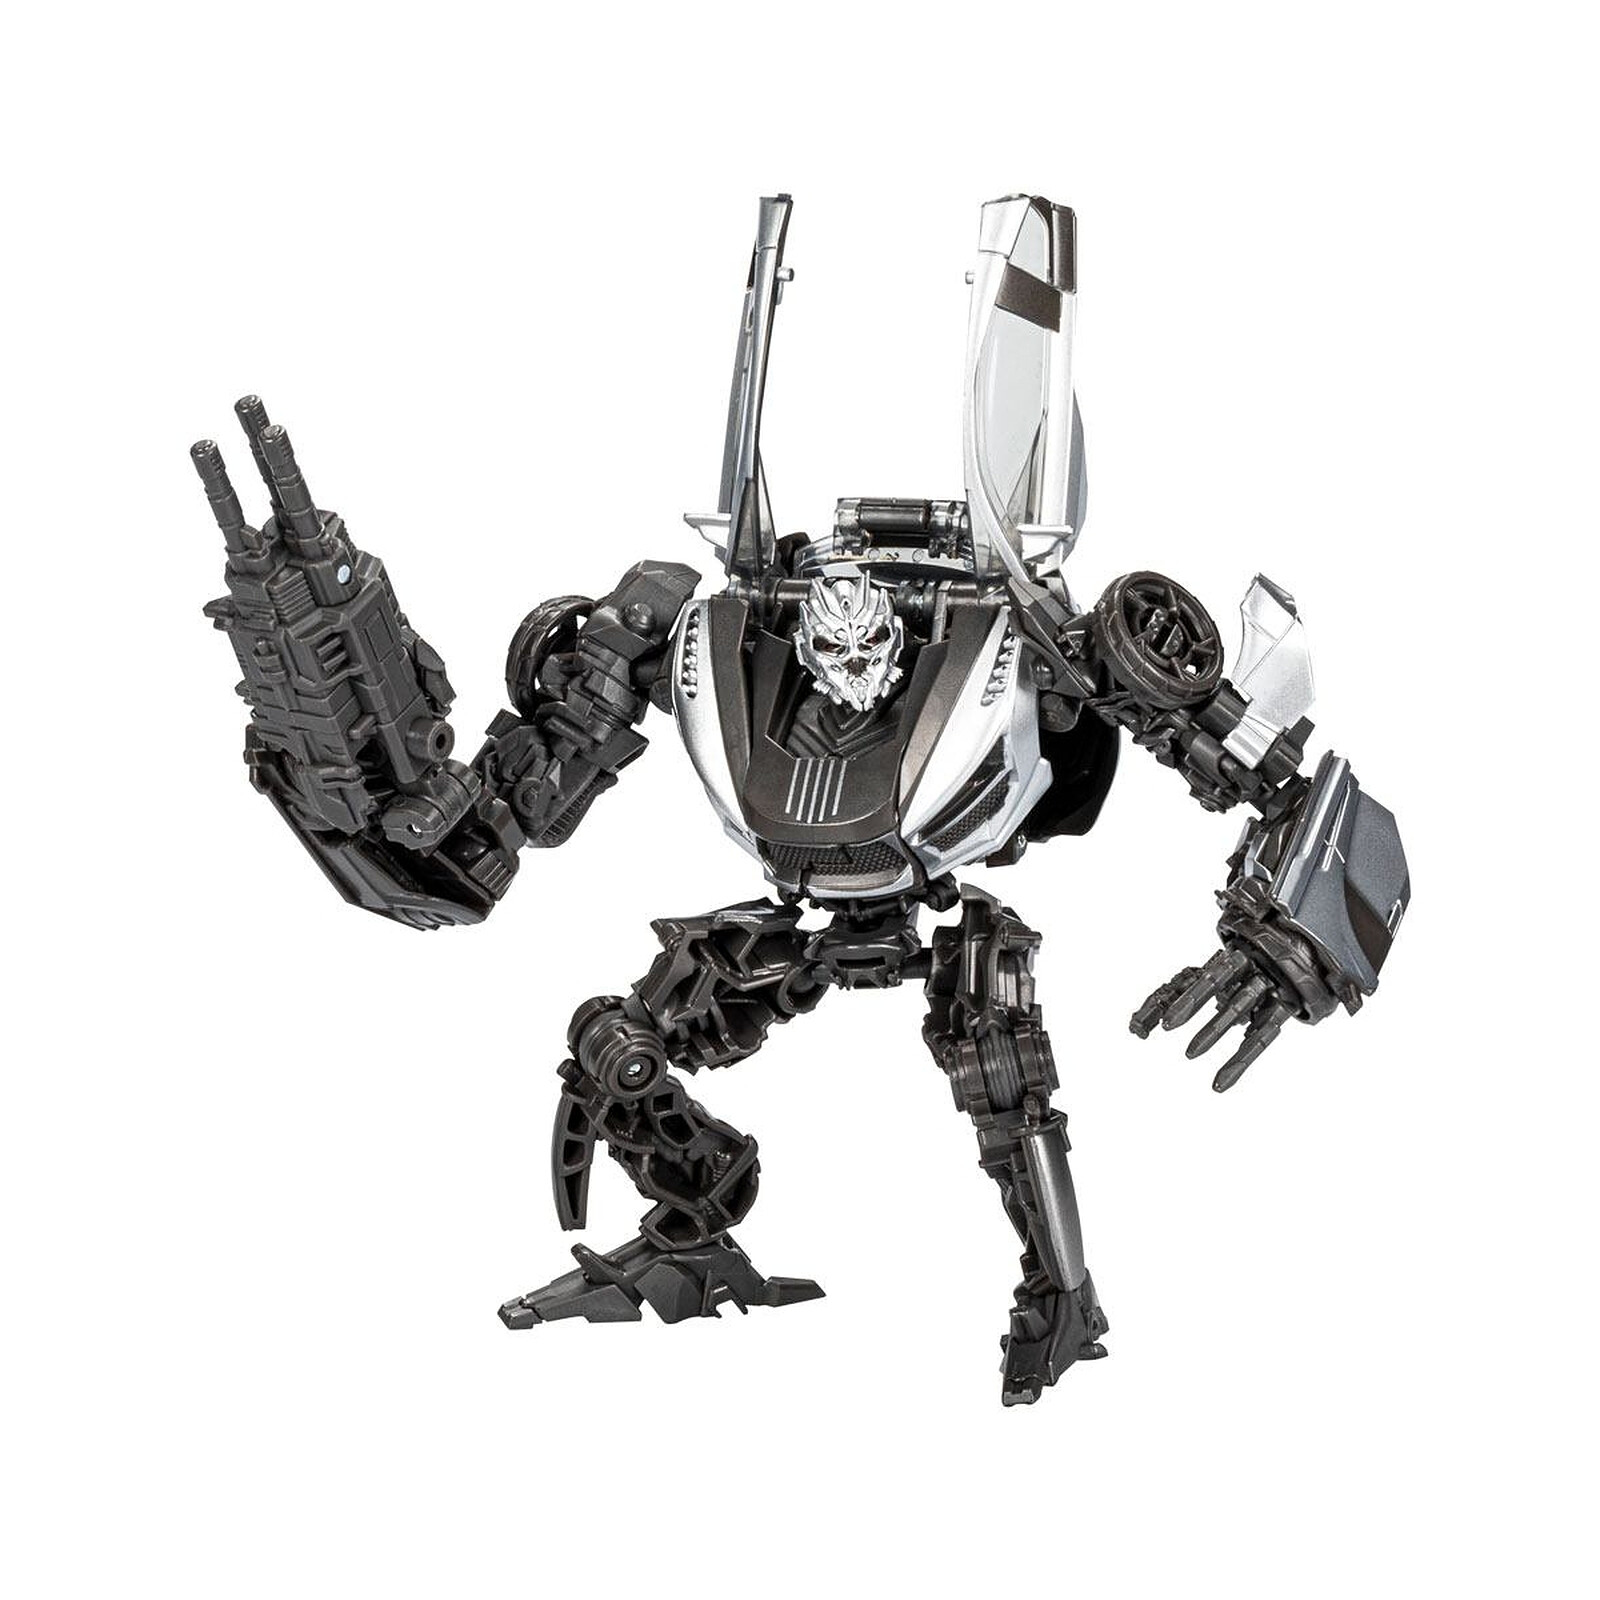 Jouet transformable 2 en 1 11cm Transformers Studio Series Robot Deluxe Shatter 